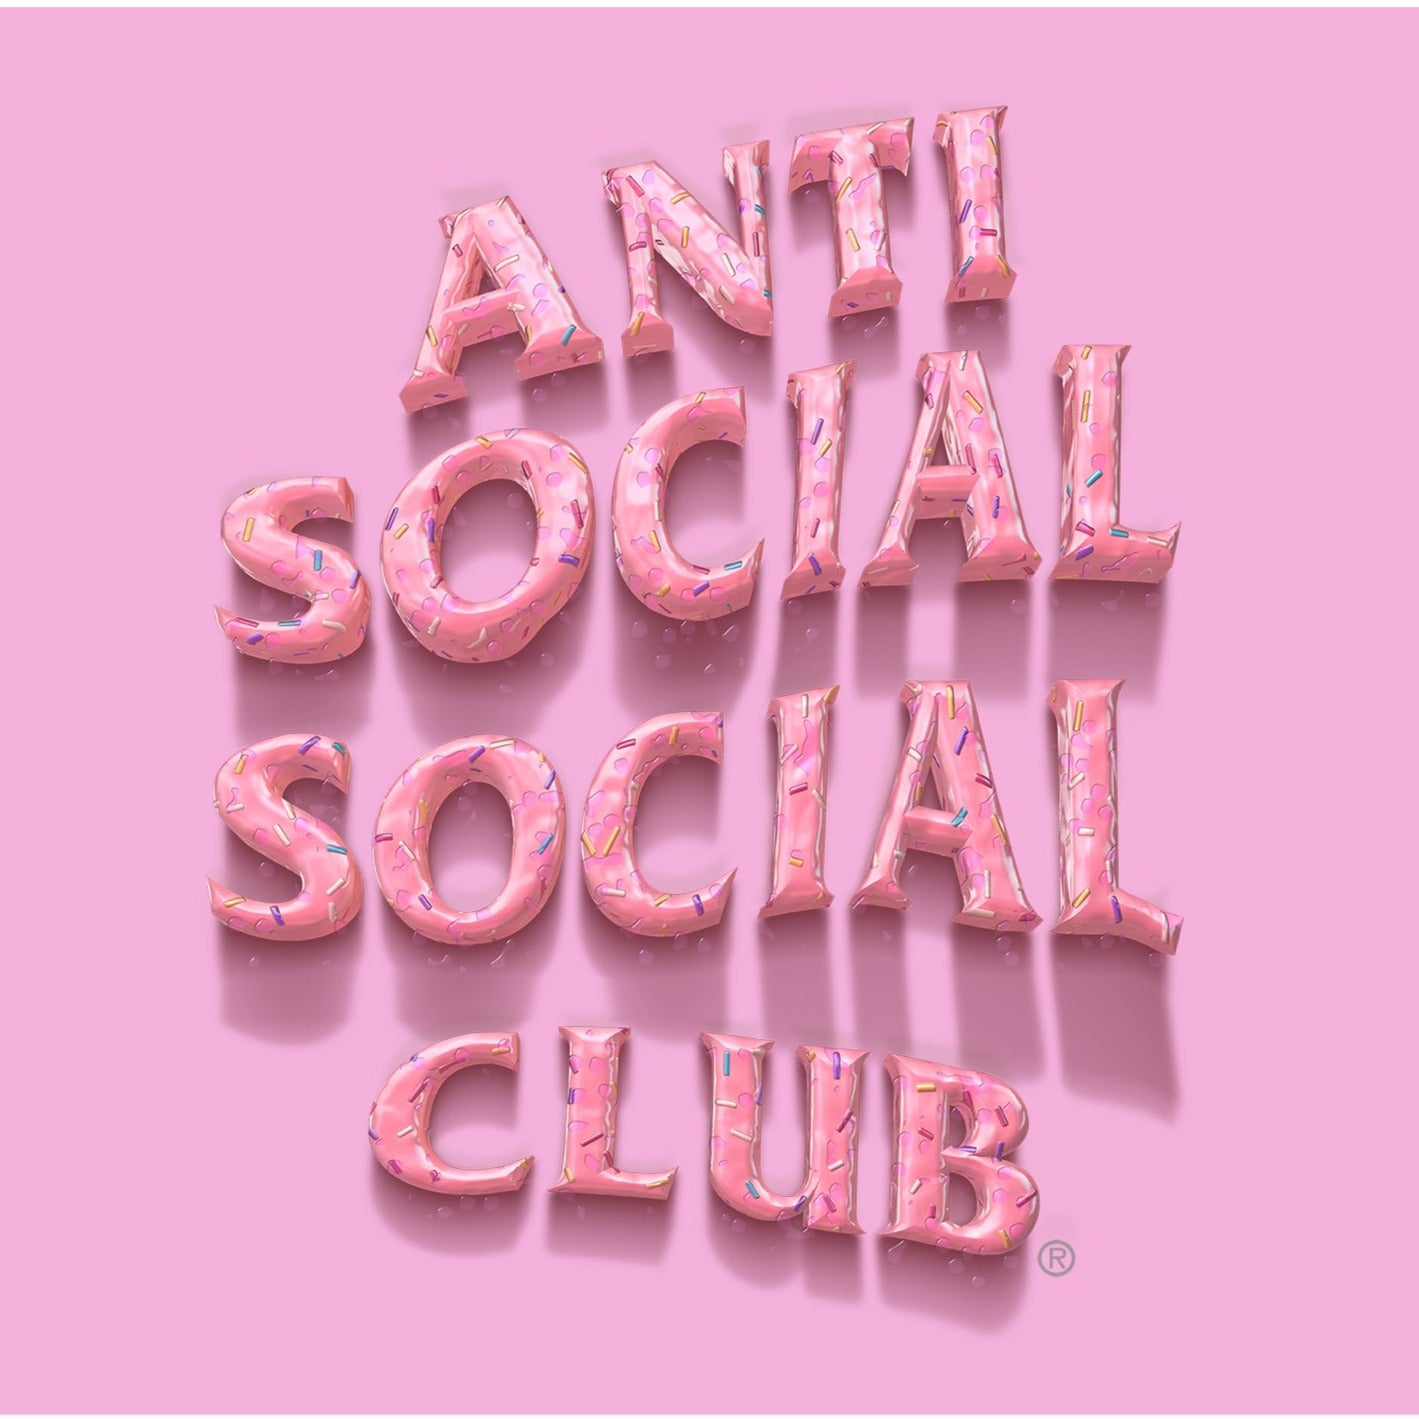 Sprinkling Tears White Shirt Anti Social Social Club